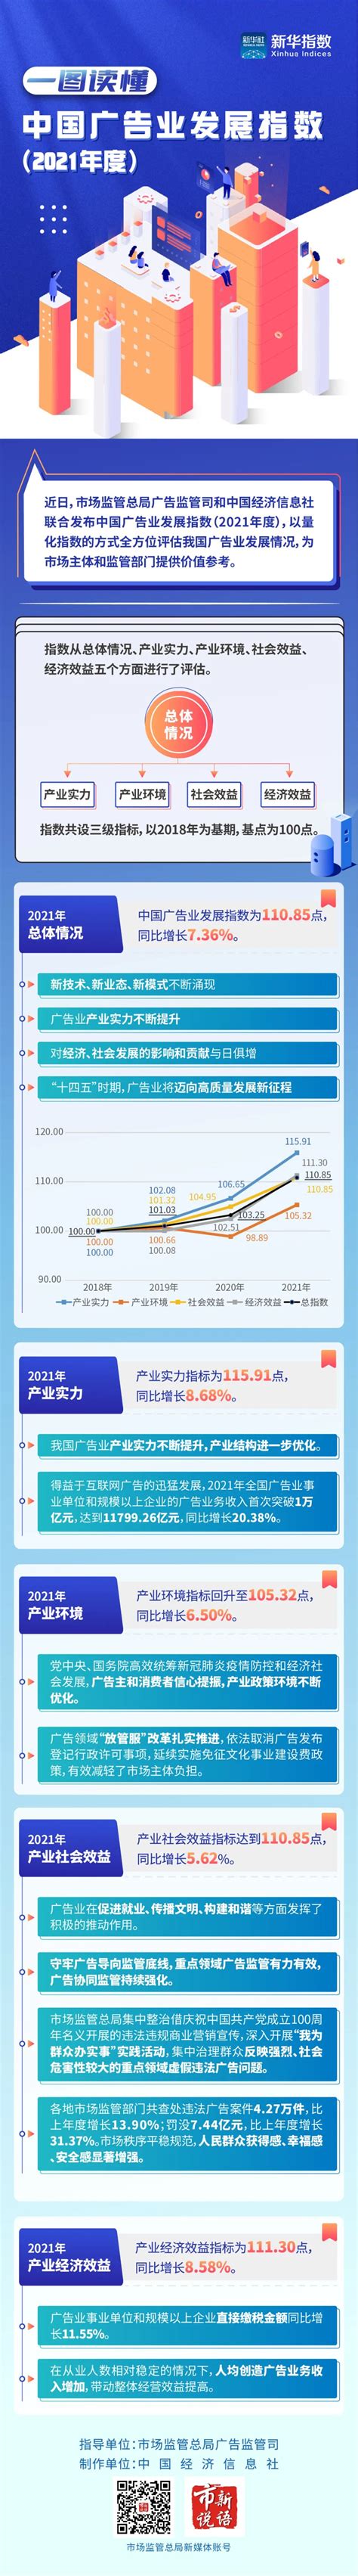 一图读懂 | 2021年广告产业经济效益指标同比增长8.58%-新闻-上海证券报·中国证券网